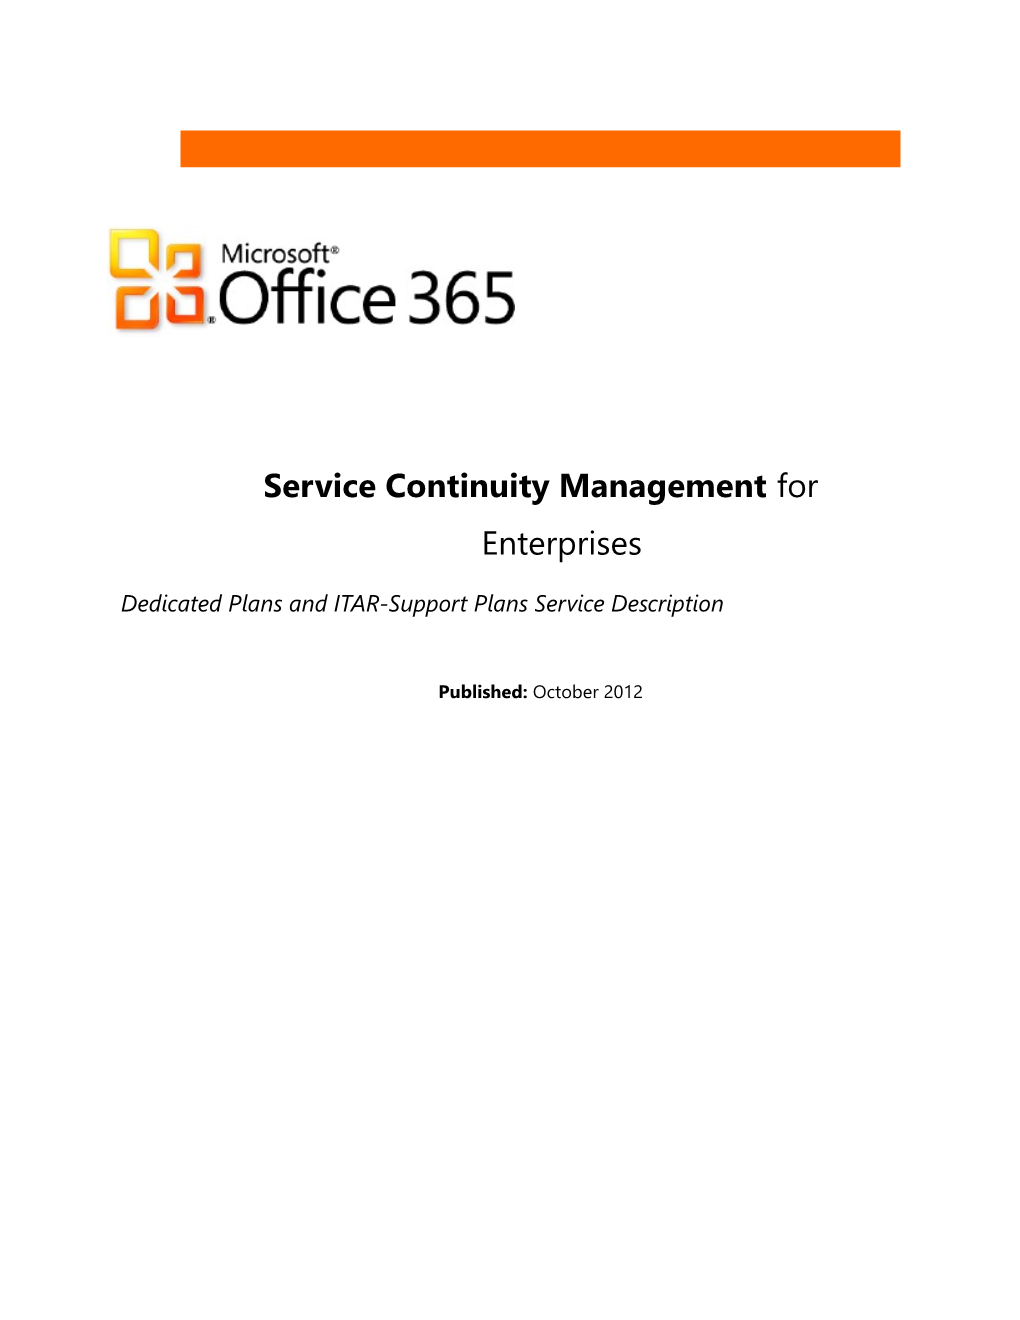 Service Continuity Management Service Description - October 2012